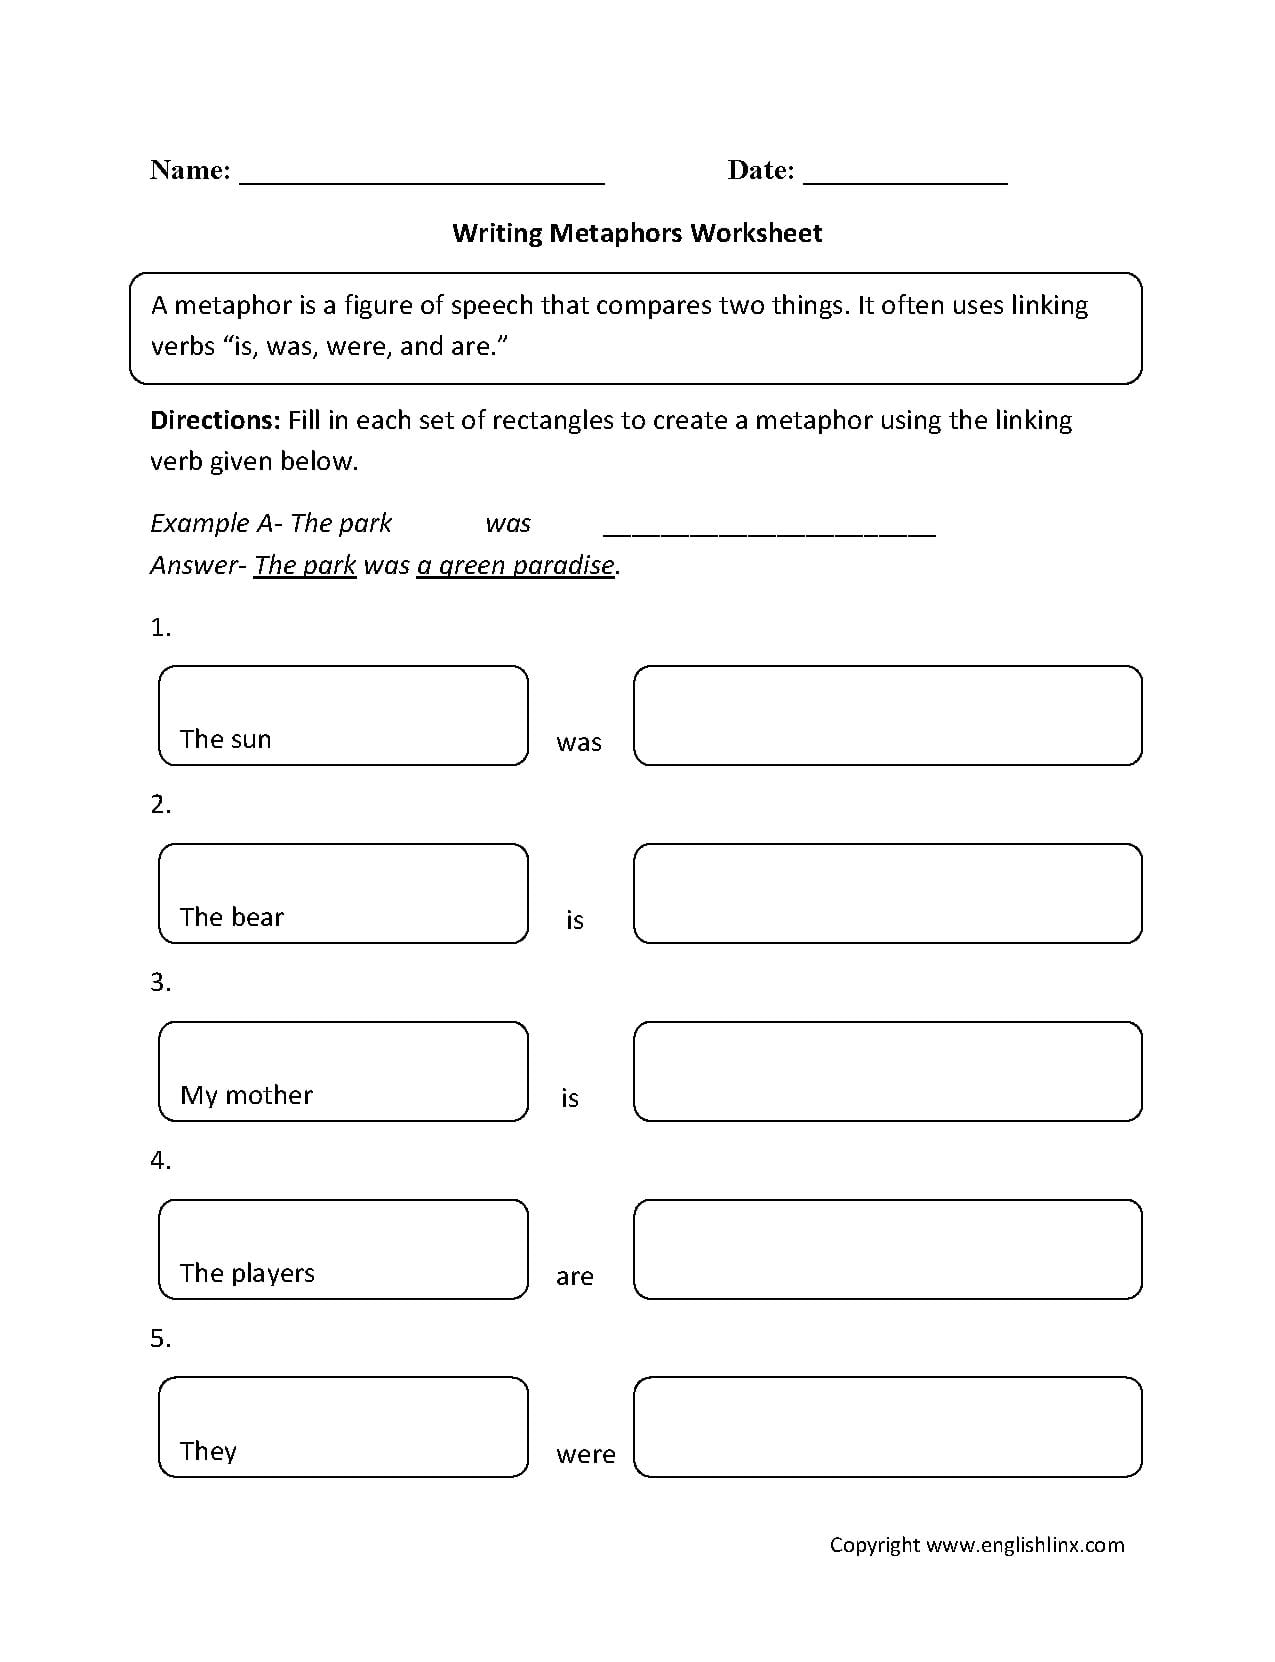 metaphor-worksheets-pdf-db-excel